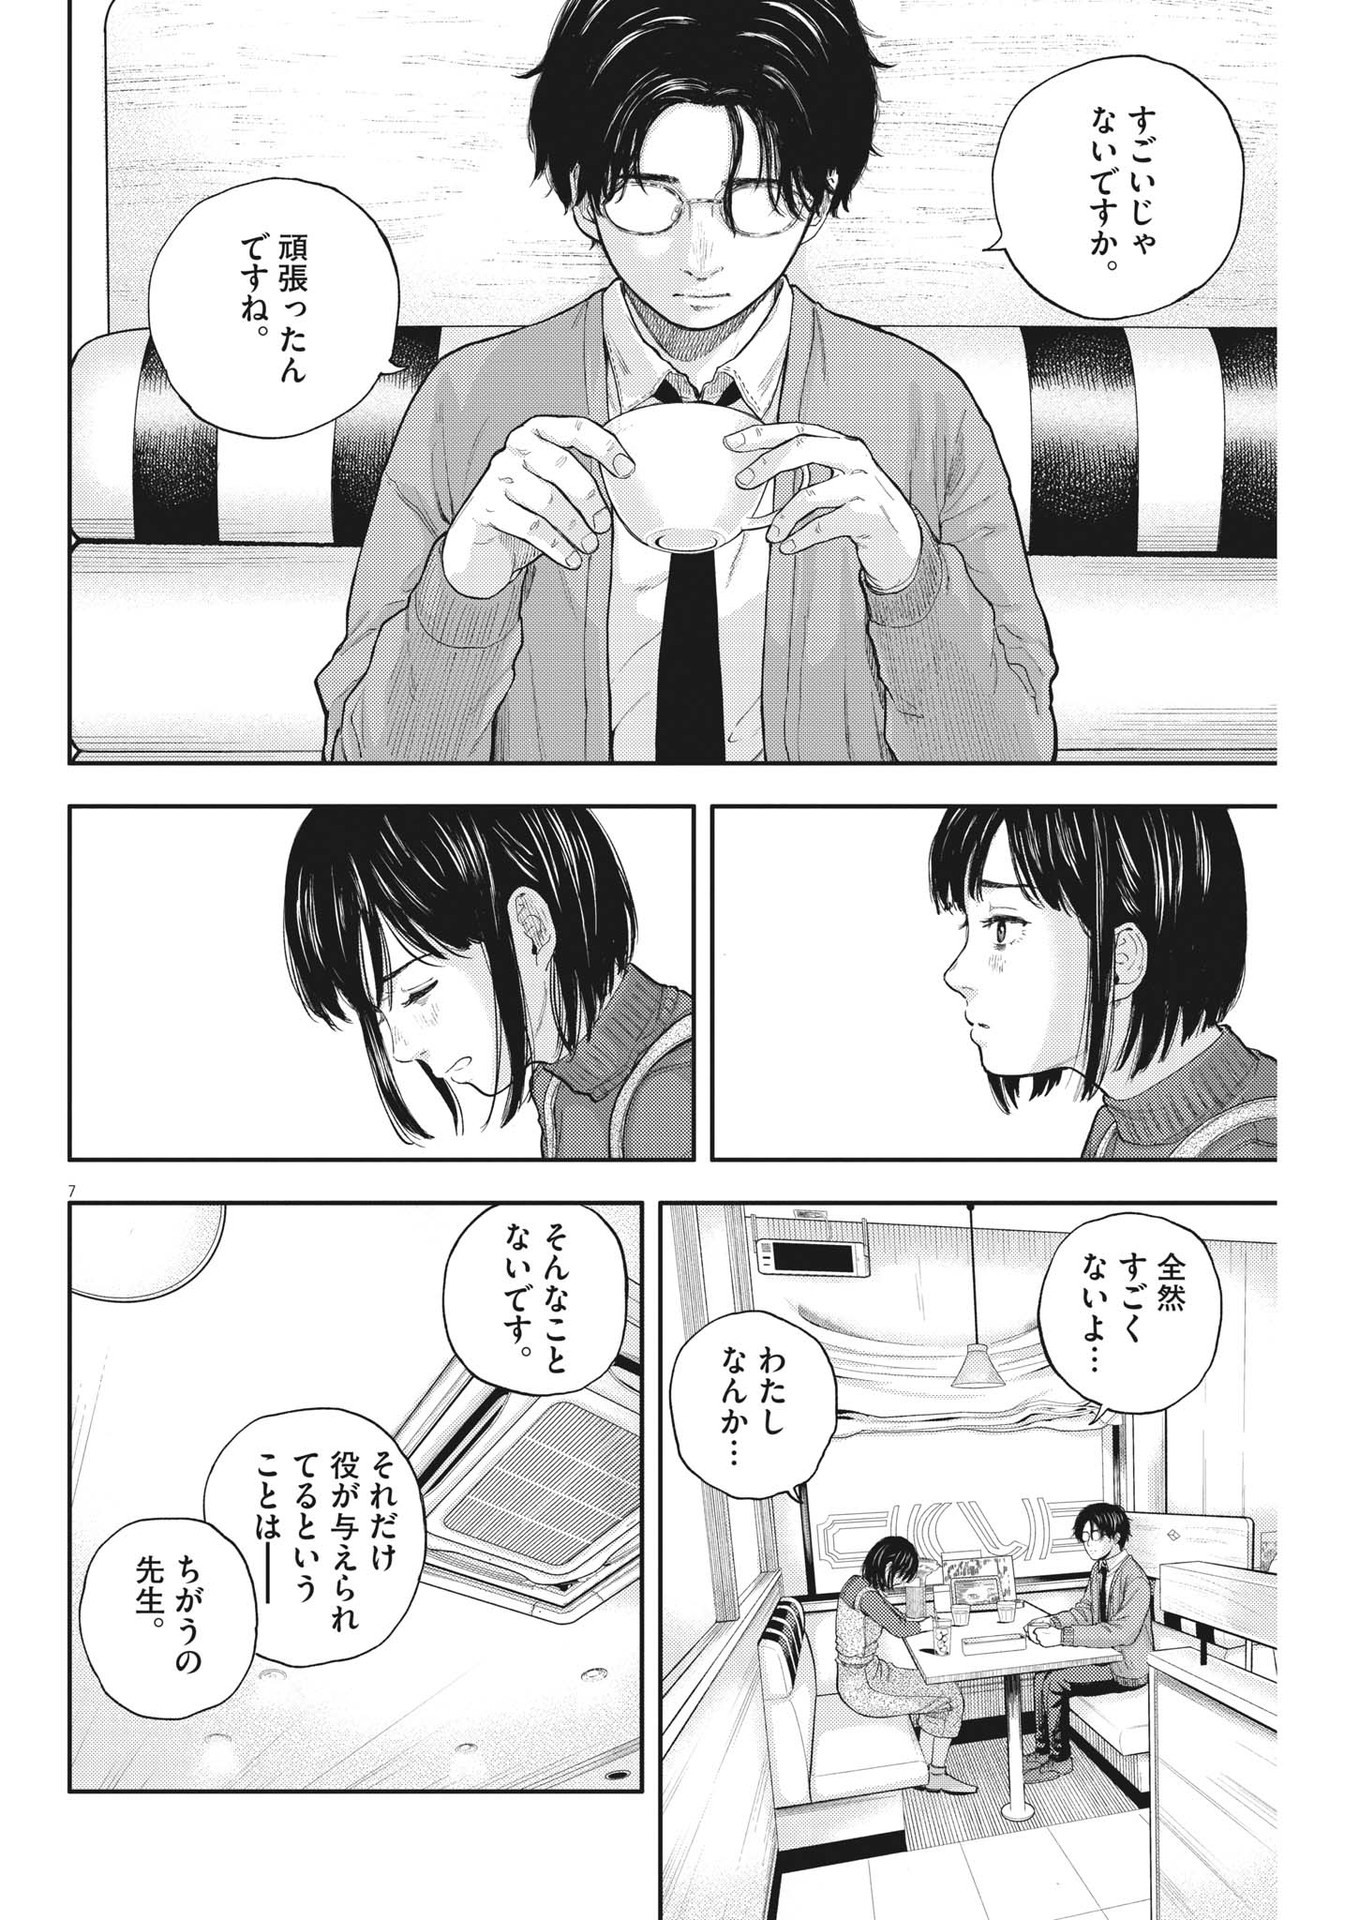 Yumenashi-sensei no Shinroshidou - Chapter 2 - Page 7